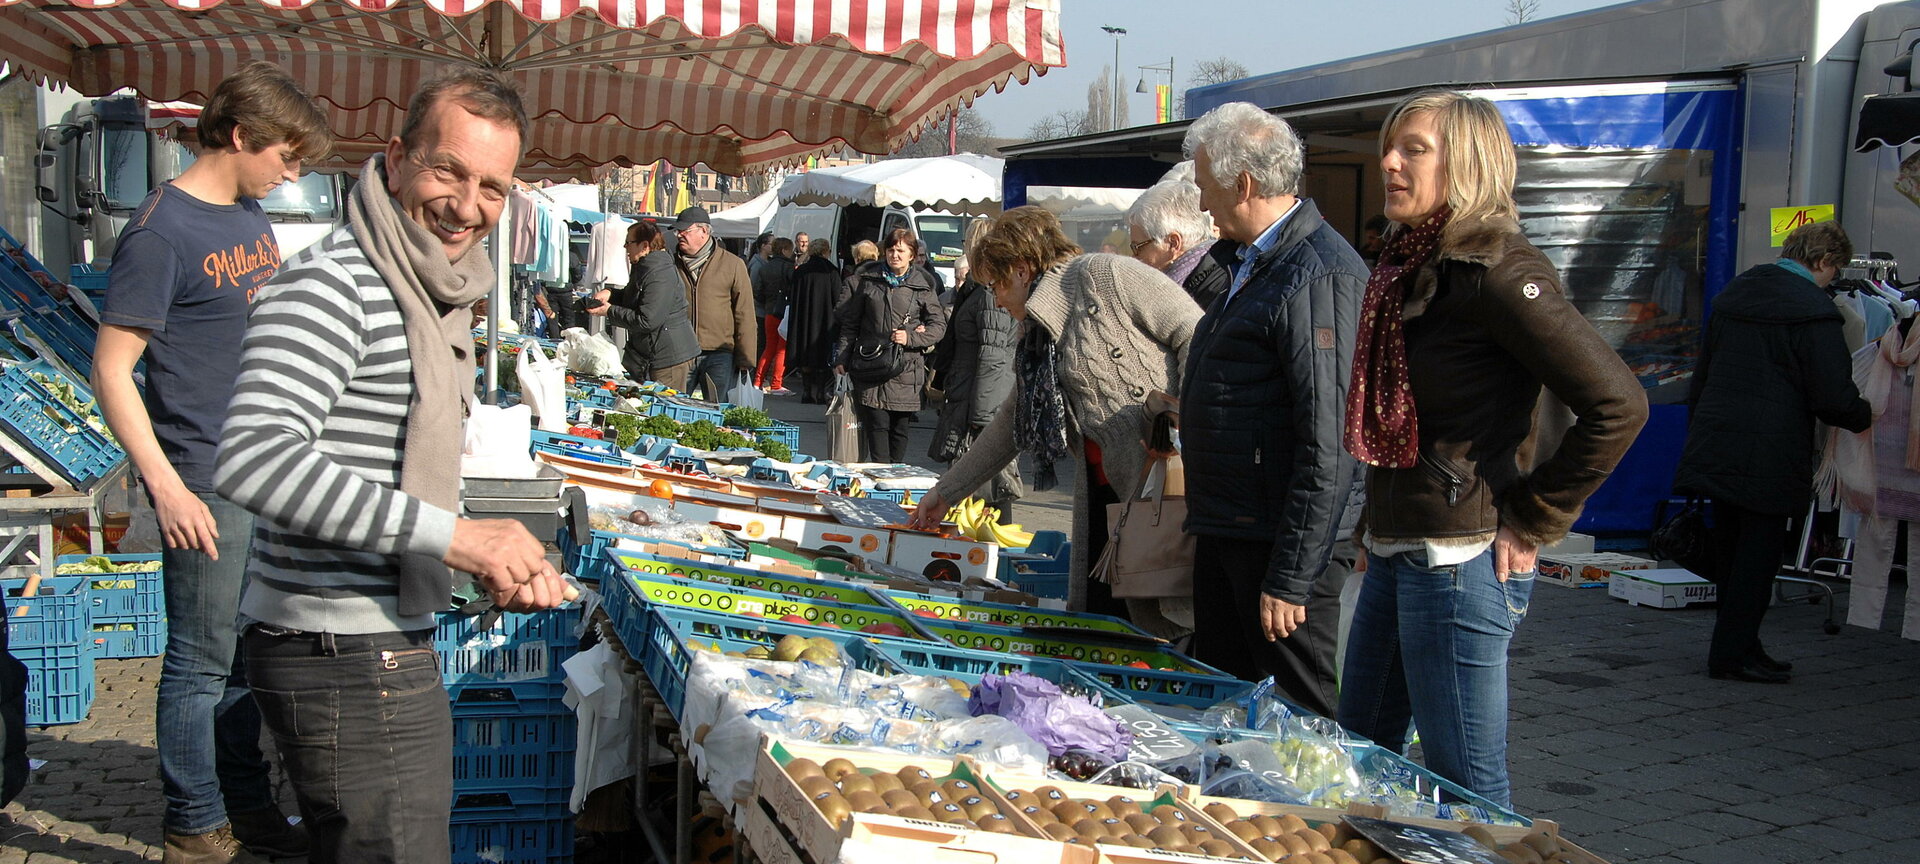 Markten in Hasselt - Wekelijkse markt